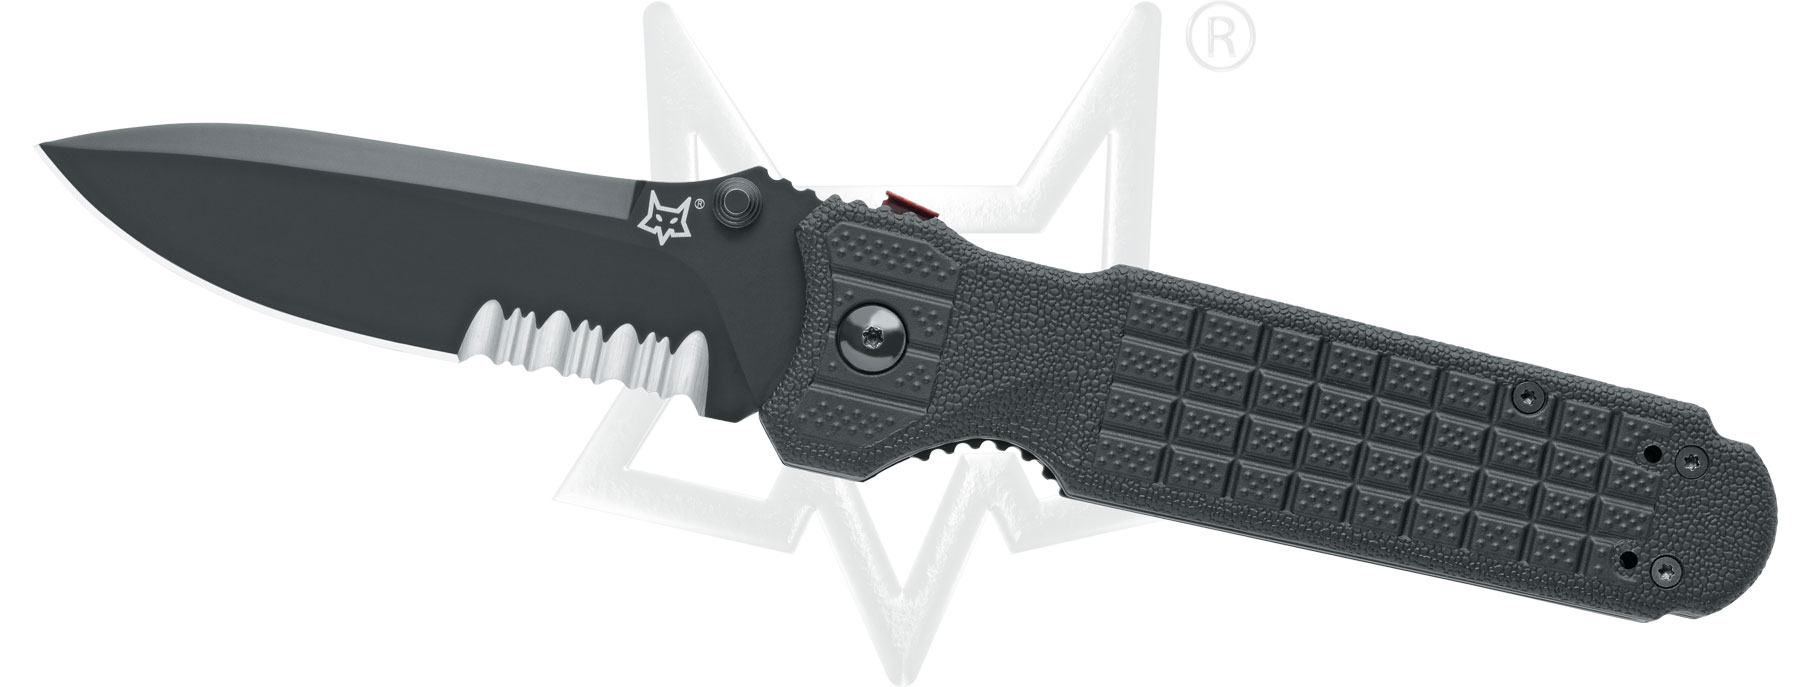 FX-446 BS - Predator II - Liner Lock - Folding knives - FOX Knives